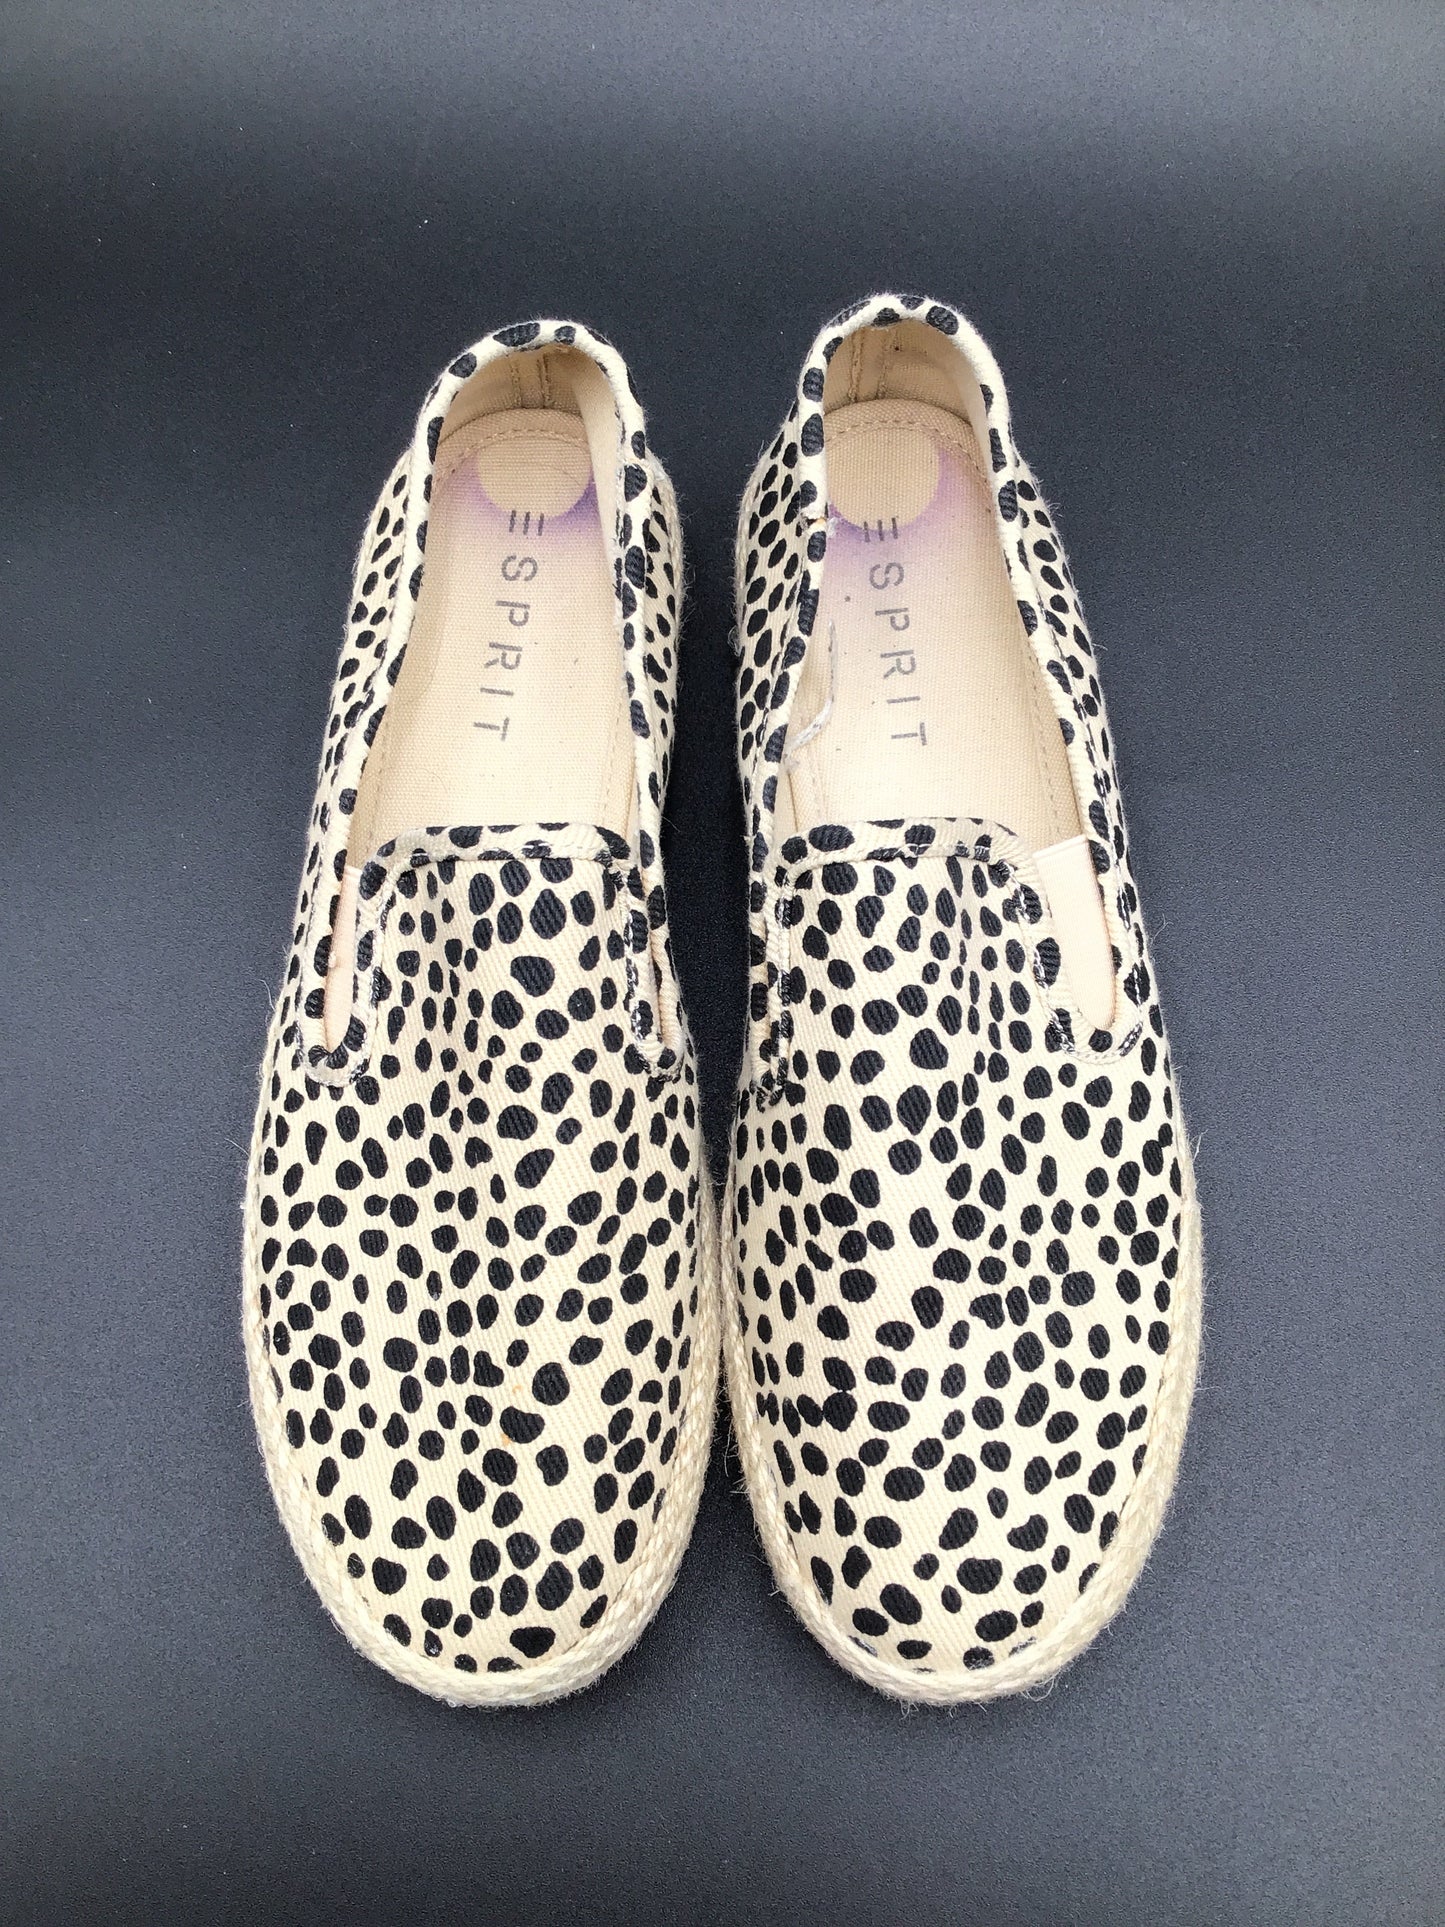 Dots Shoes Flats Espadrille Esprit, Size 8.5